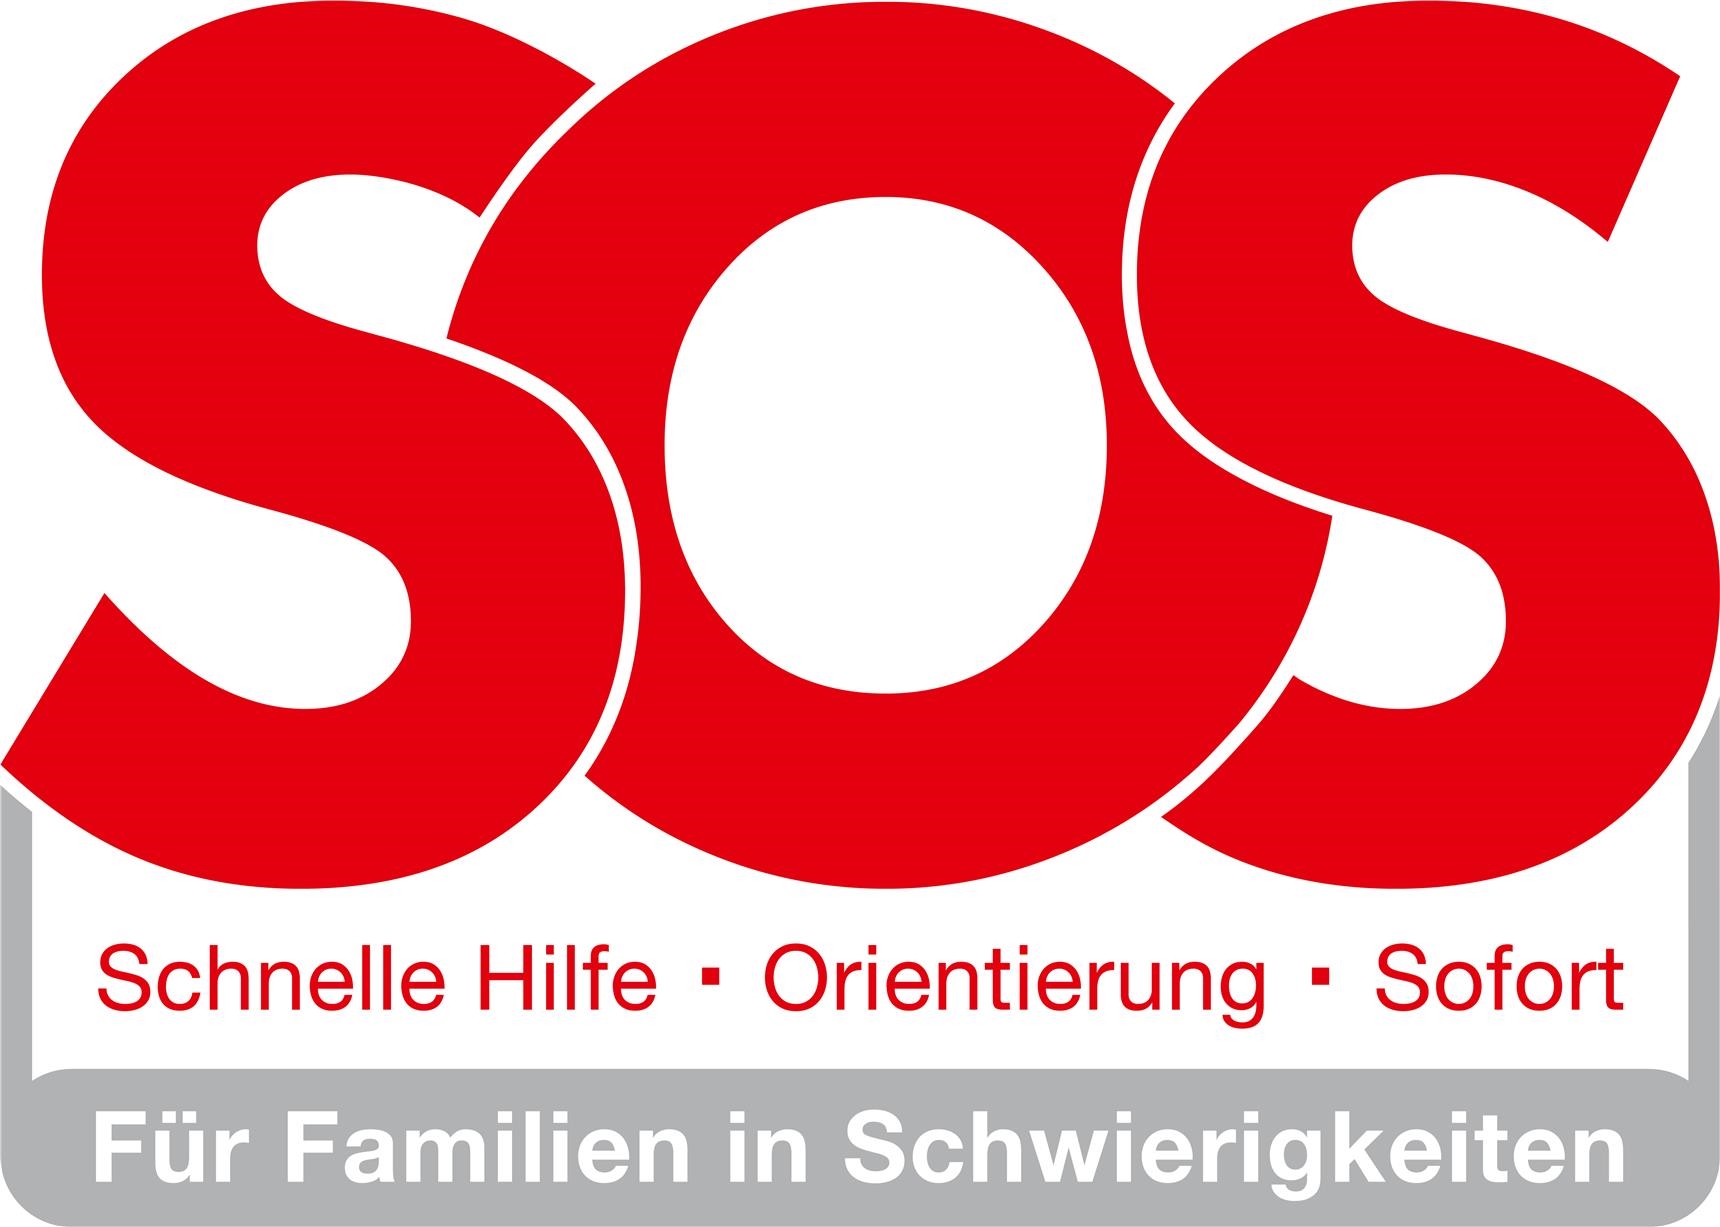 SOS Familie Logo